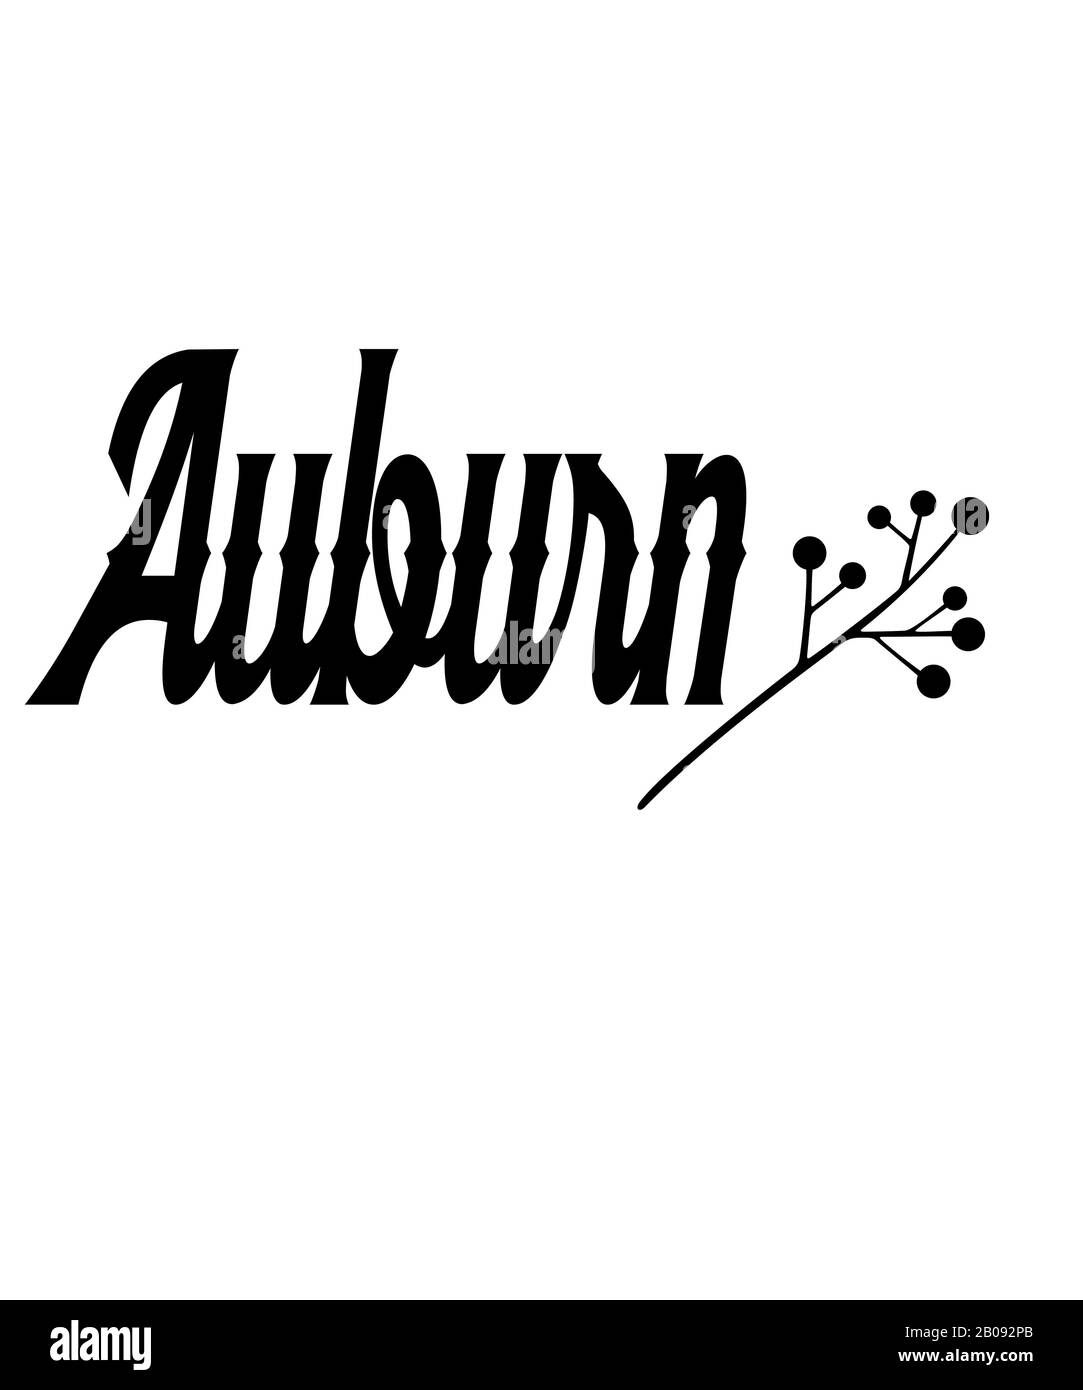 Texte graphique Auburn avec texte noir embellisquant et fond blanc. Auburn est une ville ou une ville dans de nombreux États et pays. Banque D'Images